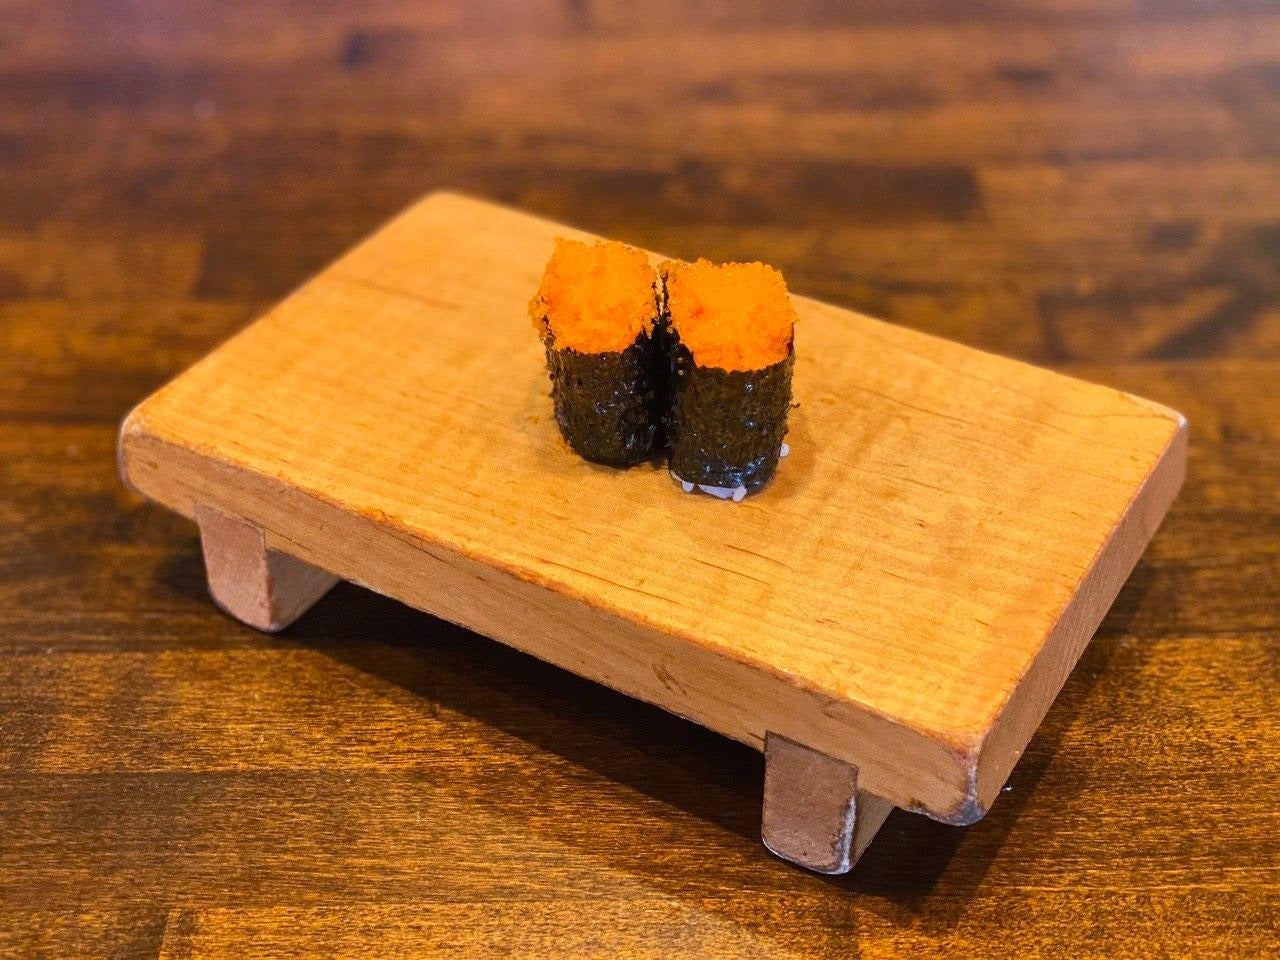 masago sushi